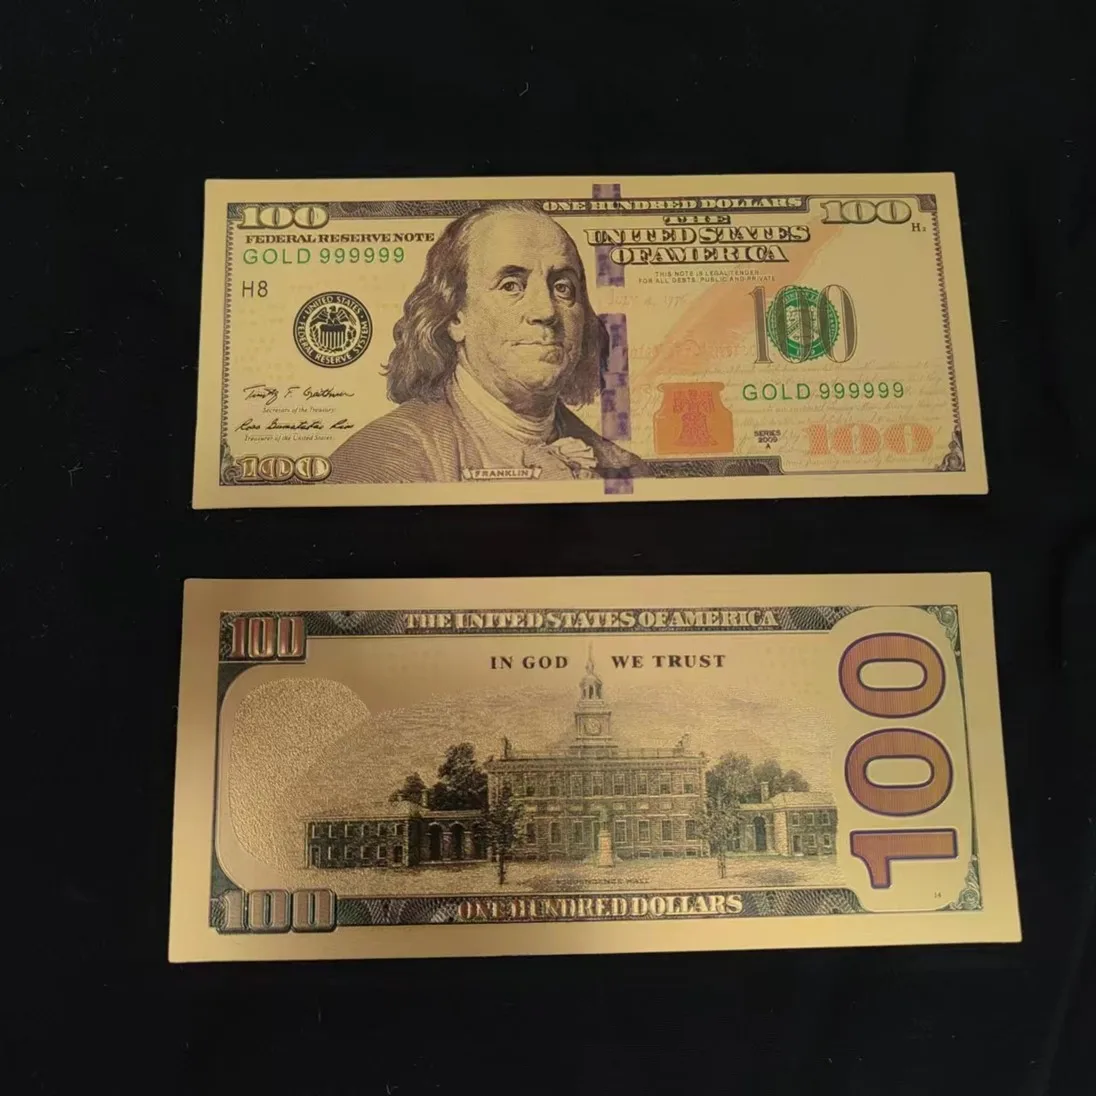 USD 50 Bills for Sale - USD 50 Bills